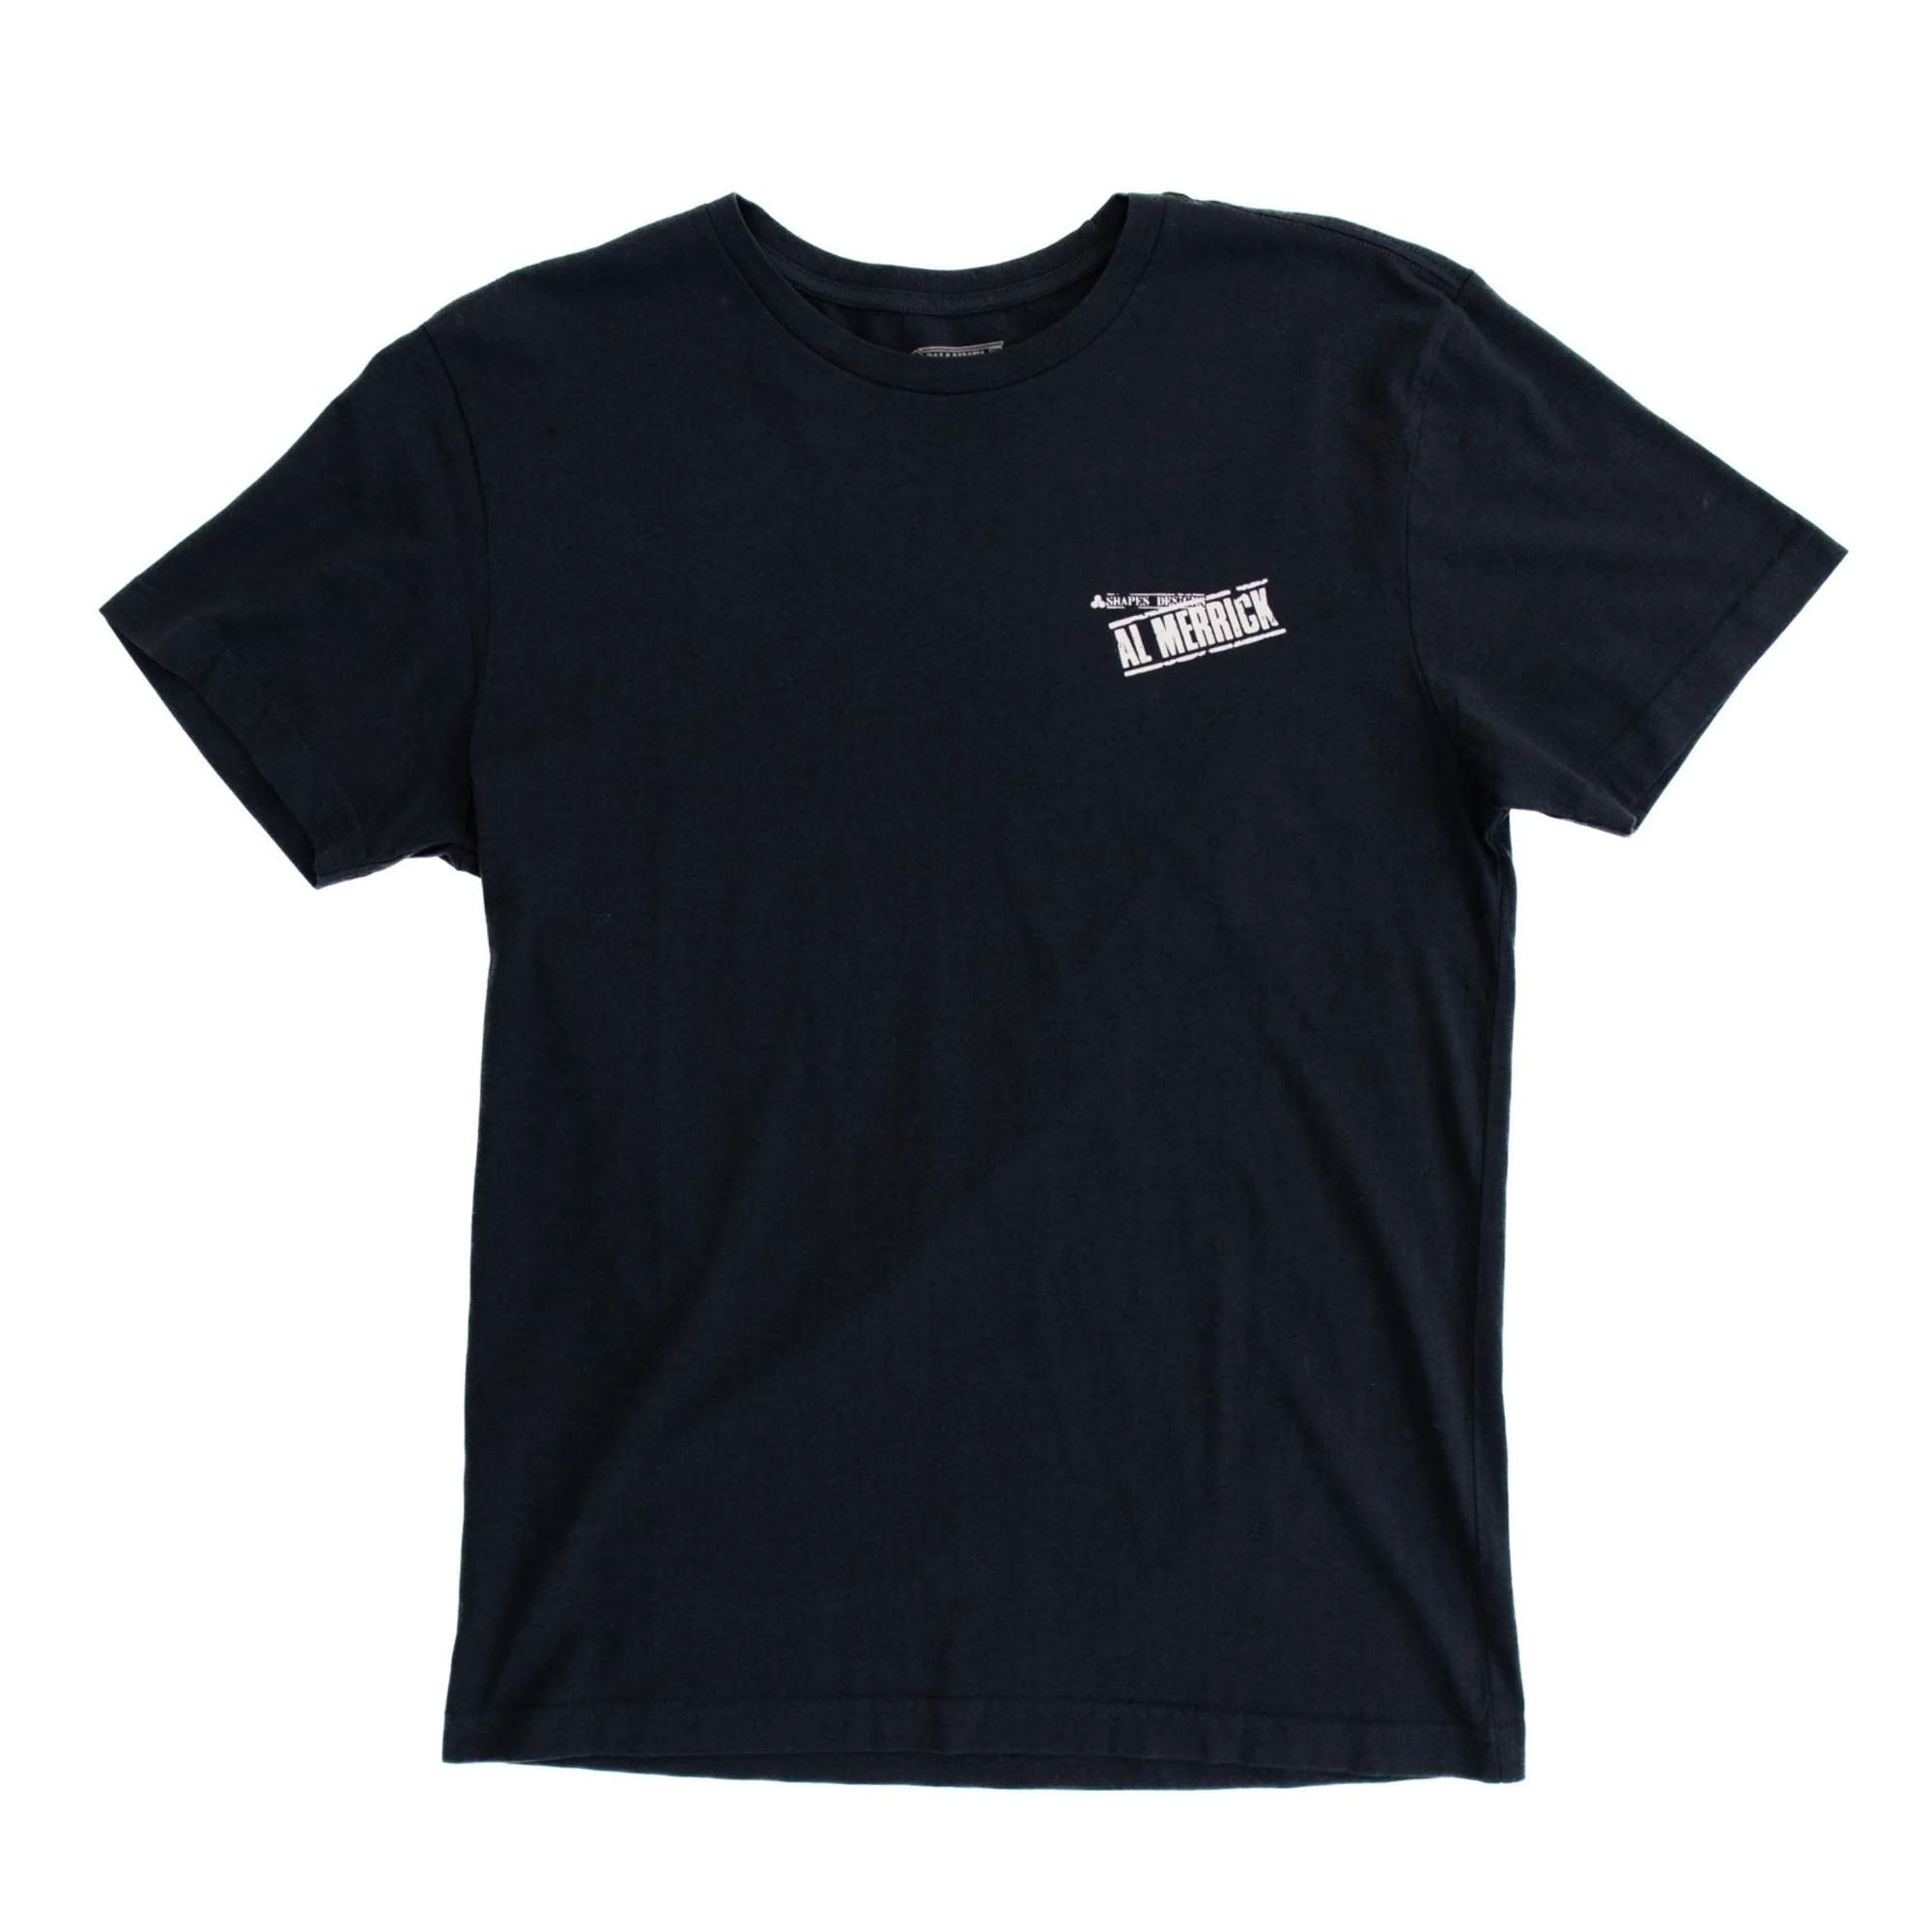 Channel Islands Al Stamp OG Men's S/S T-Shirt